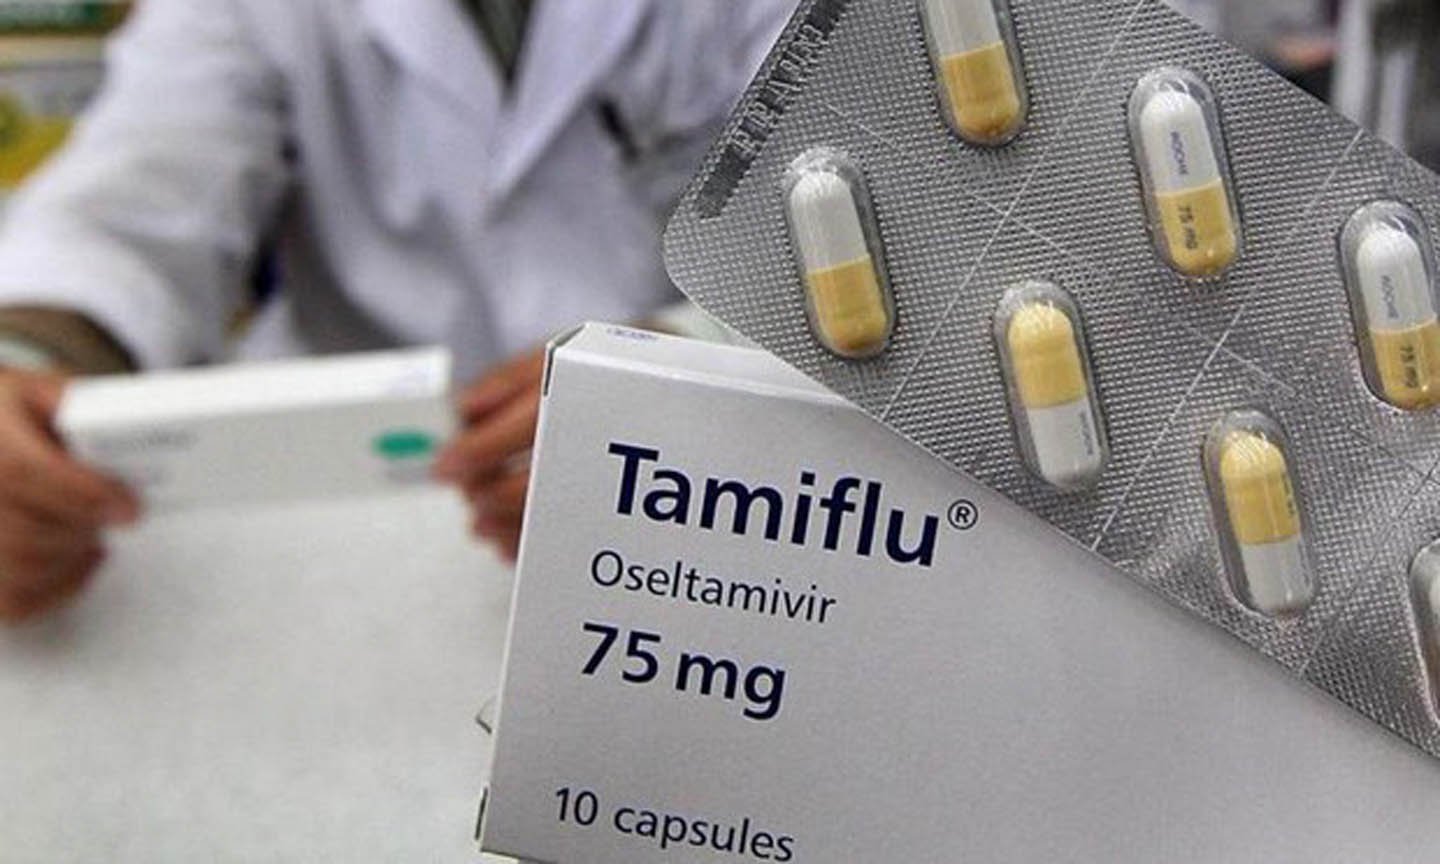   Bác sĩ có thể sử dụng thuốc Tamiflu để điều trị cúm H1N1  